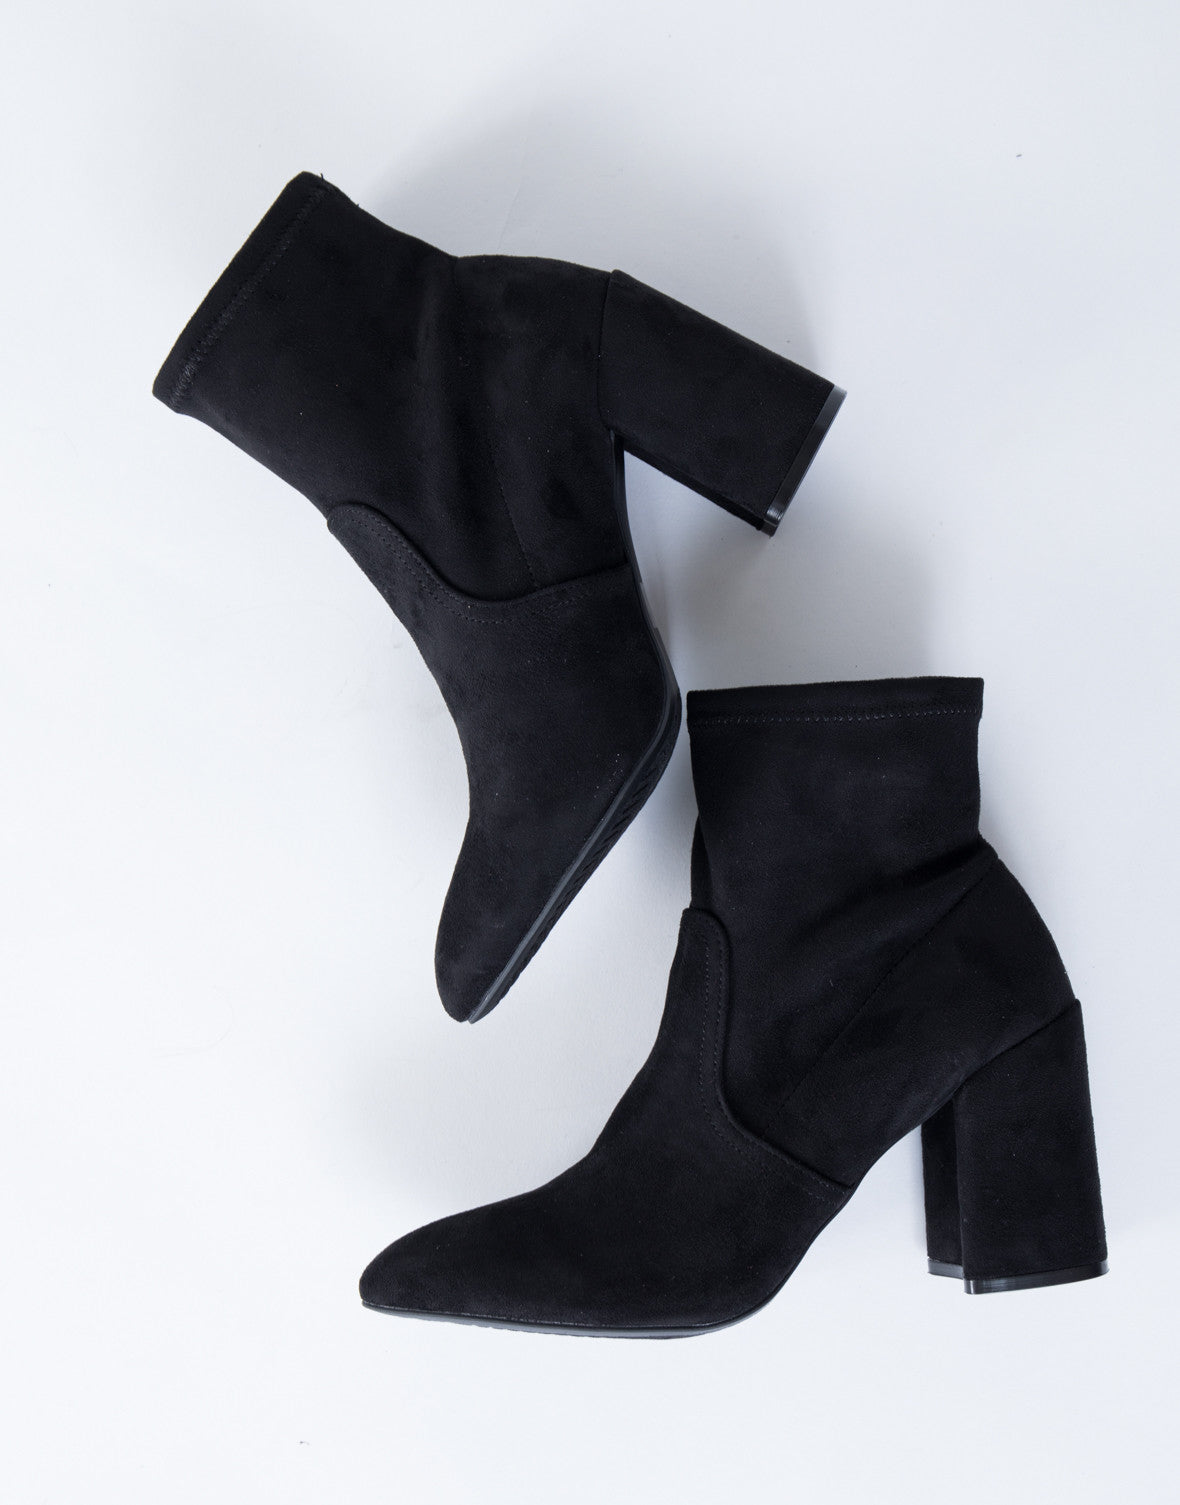 Versatile Sock Boots - Black Suede 